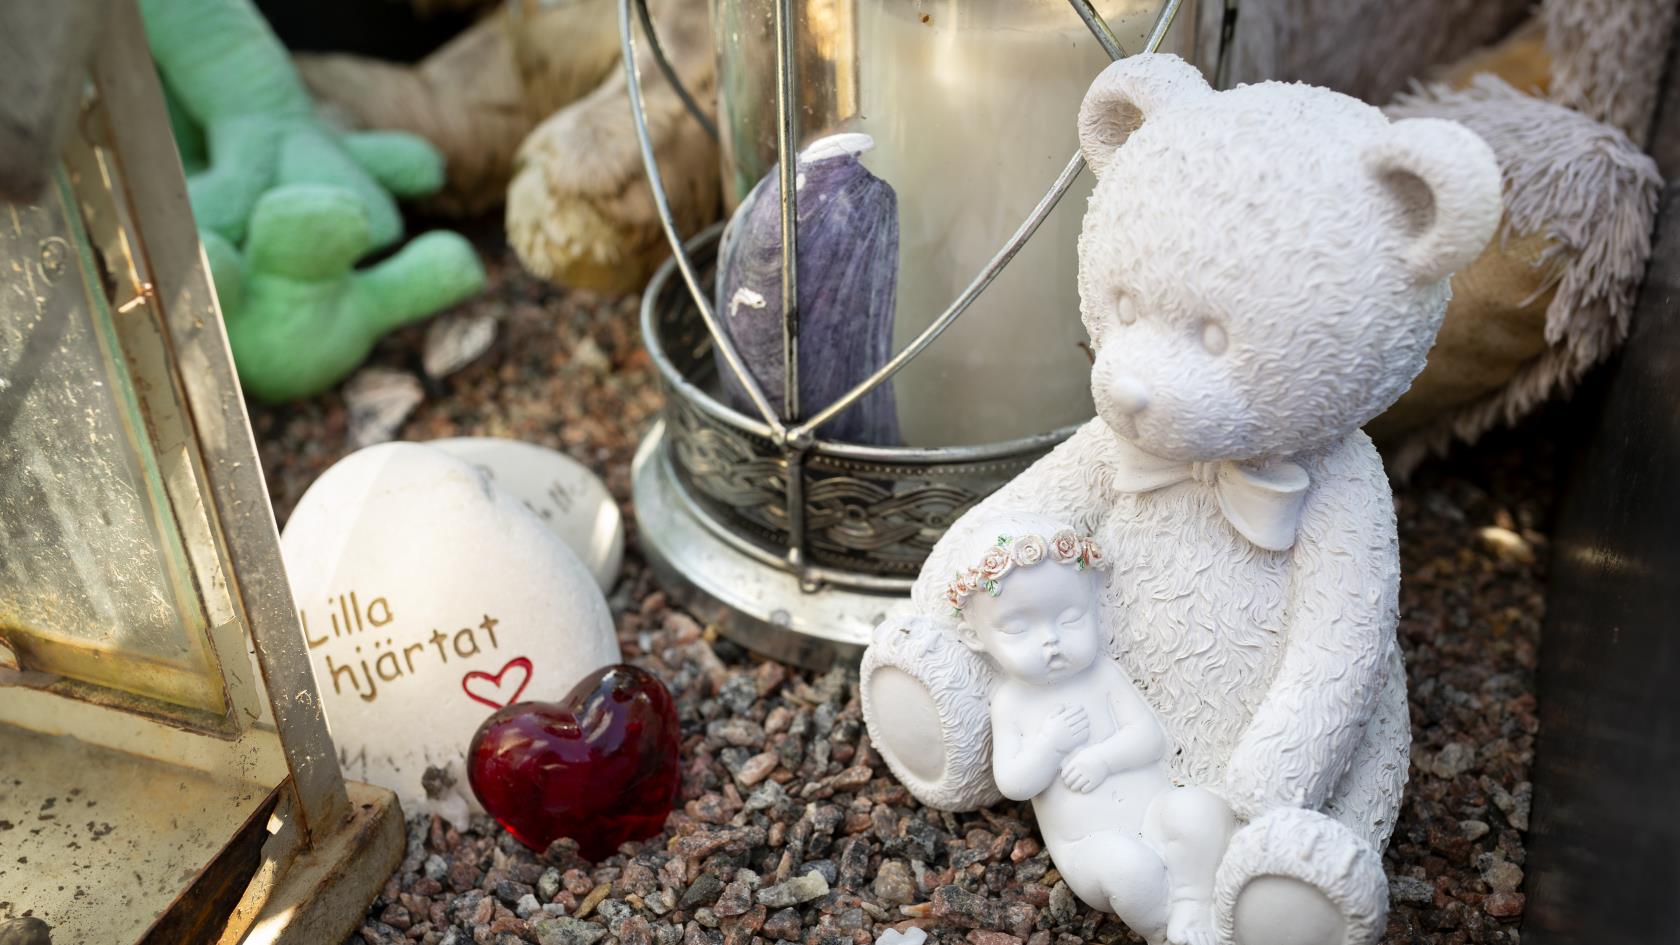 En grav dekorerad med bland annat en nallebjörn, ett hjärta i glas och en sten med texten Lilla hjärtat.